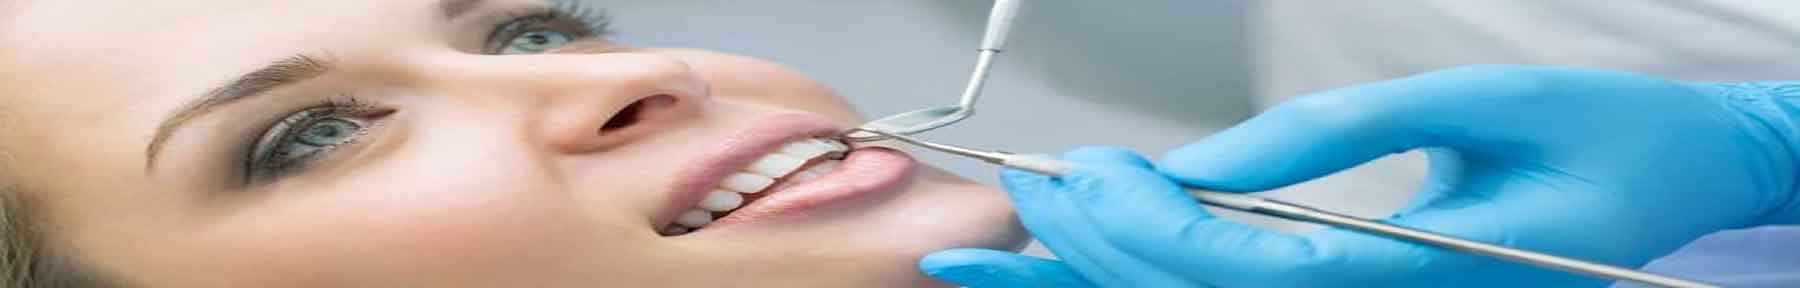 کلینیک دندان پزشکی هاشمیه مشهد